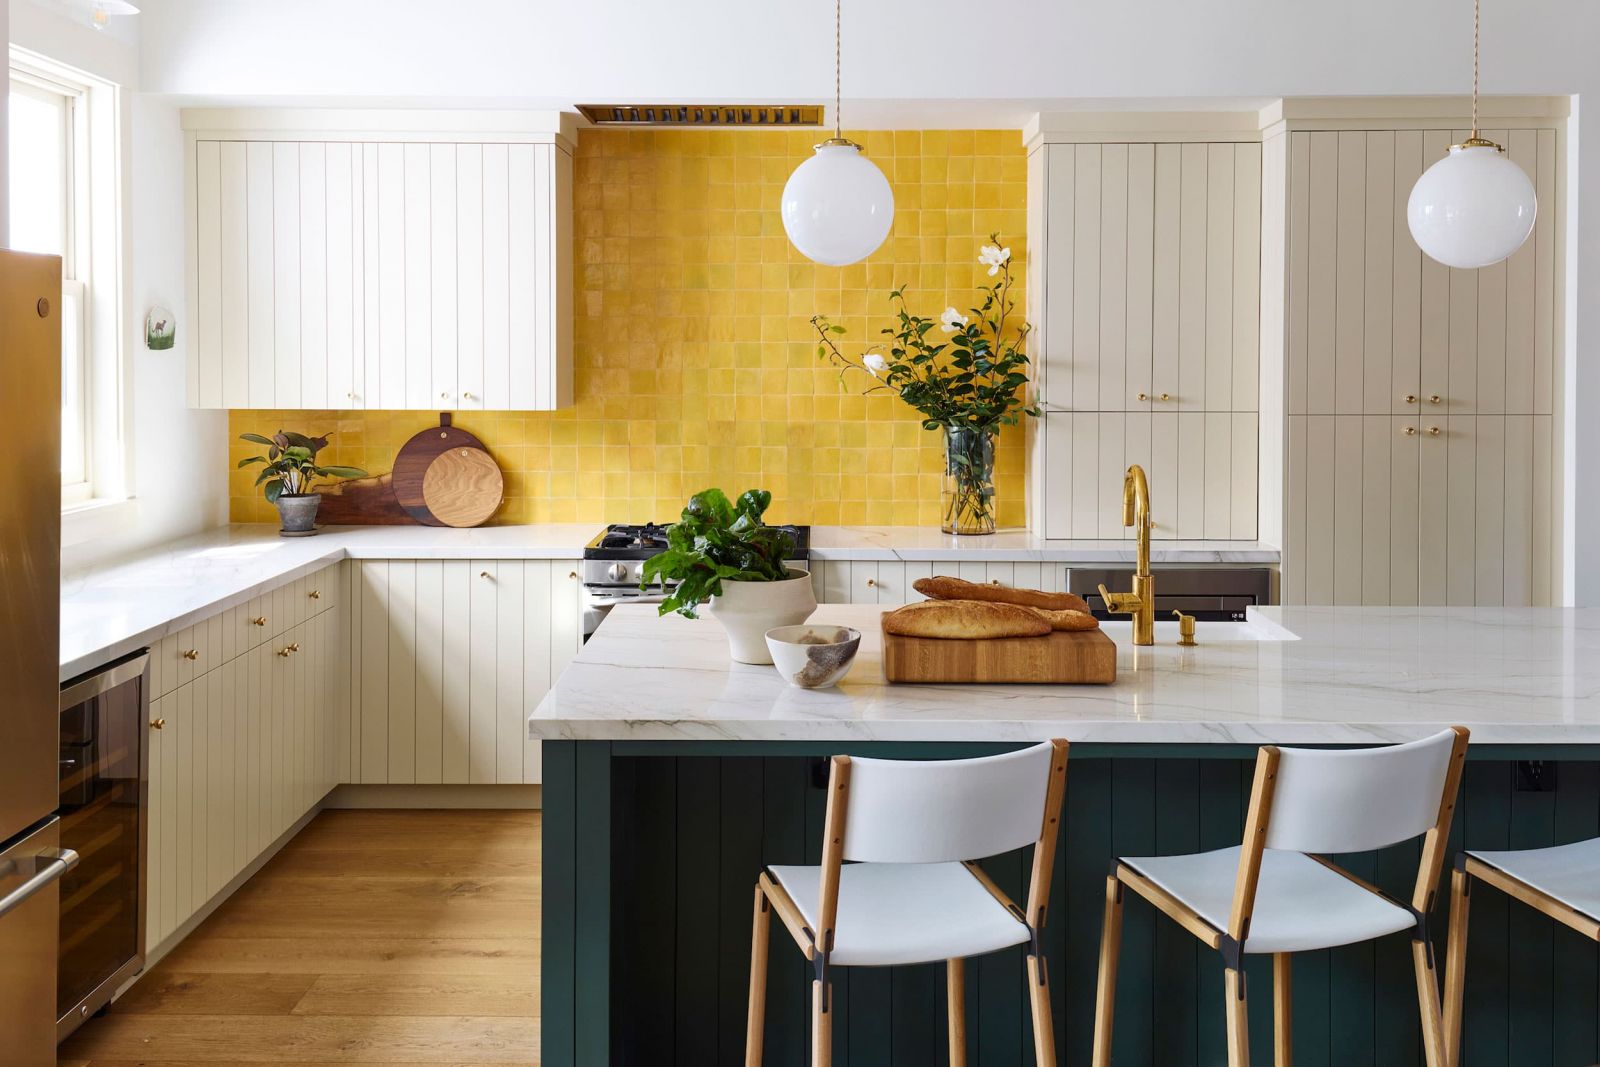 Một góc phòng bếp sử dụng màu vàng làm màu chủ đạo